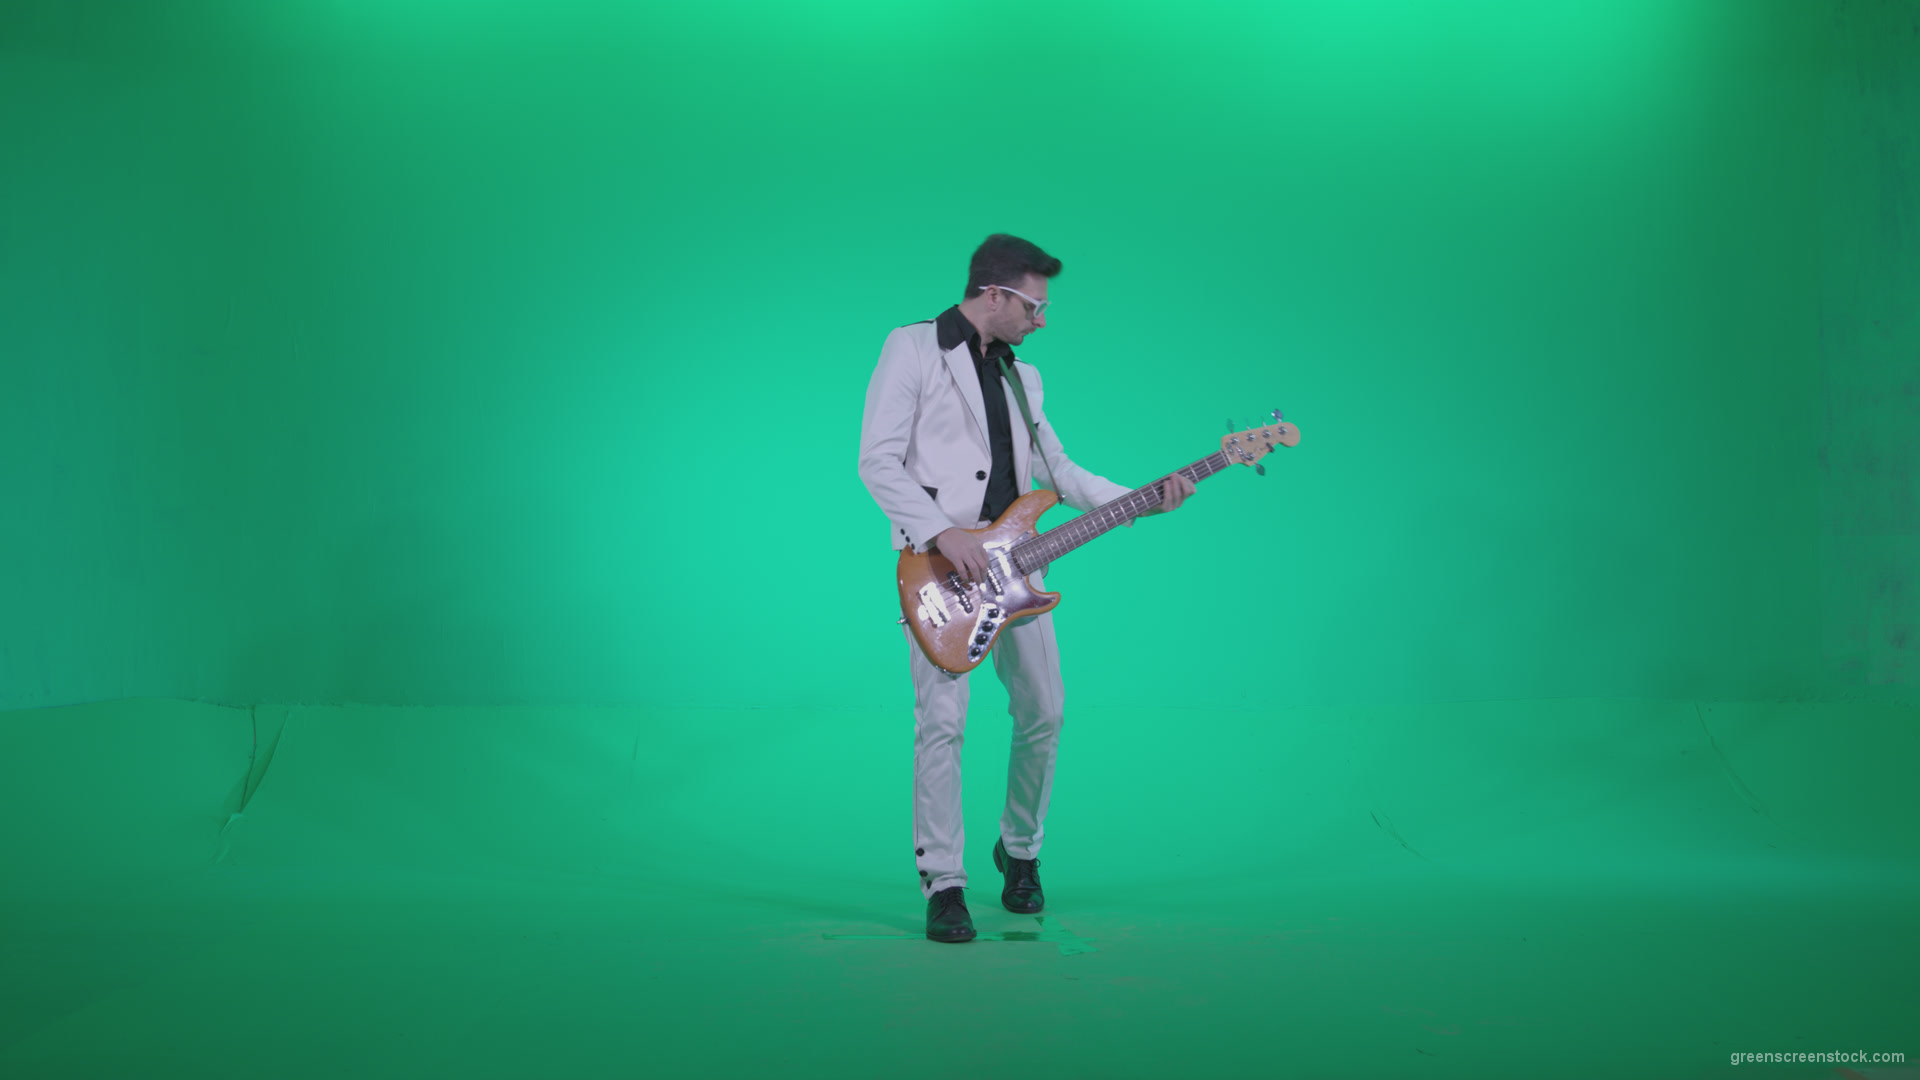 Bass-Jazz-Performer-6-Green-Screen-Video-Footage_009 Green Screen Stock